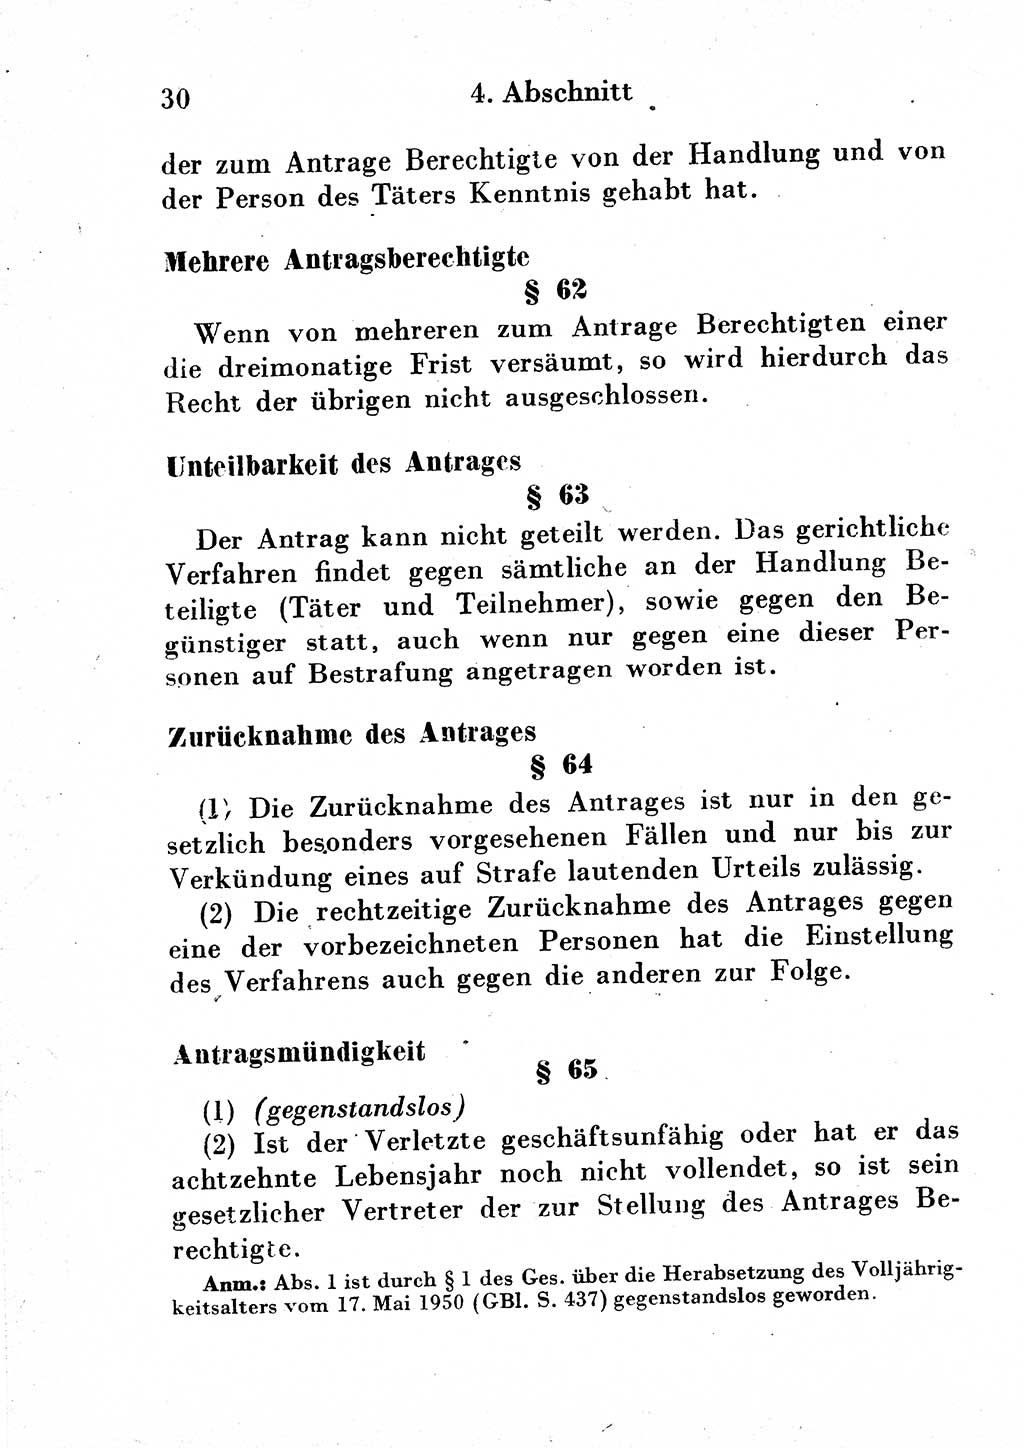 Strafgesetzbuch (StGB) und andere Strafgesetze [Deutsche Demokratische Republik (DDR)] 1954, Seite 30 (StGB Strafges. DDR 1954, S. 30)